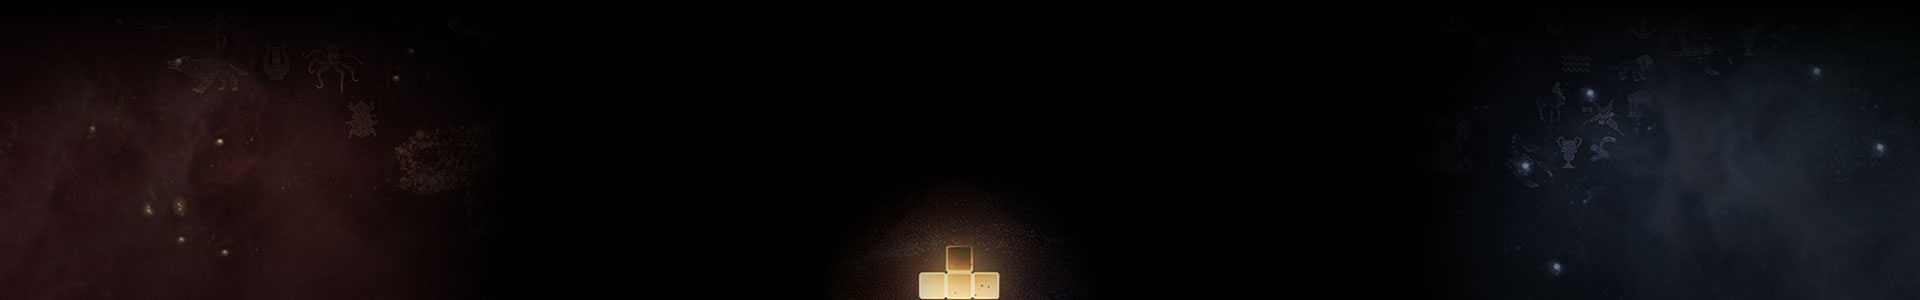 Uma peça brilhante de Tetris entre as estrelas.